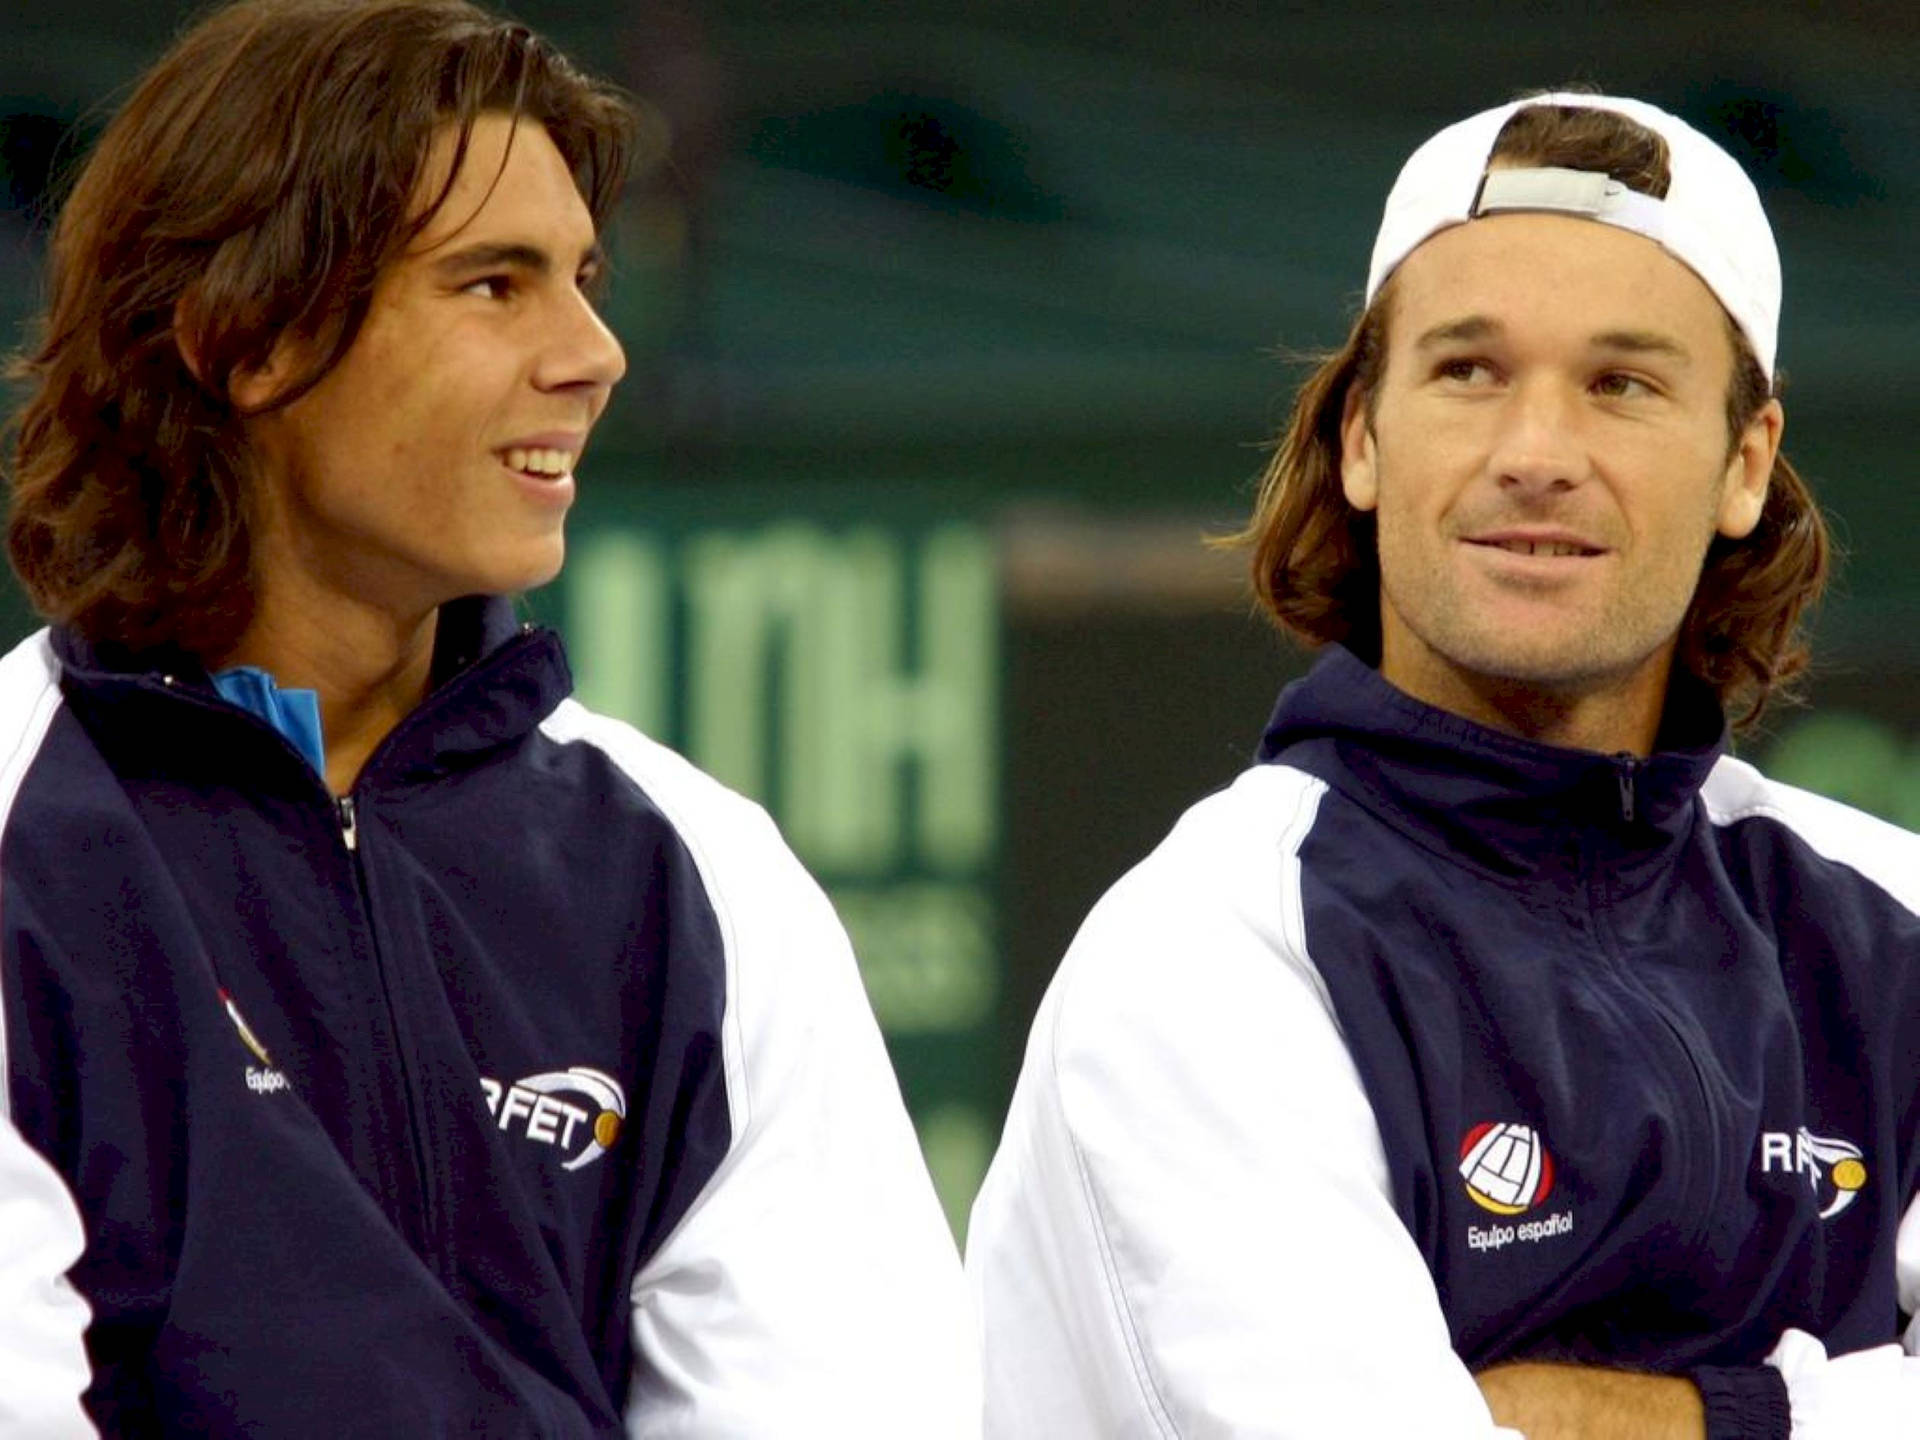 Young Carlos Moya And Rafael Nadal Wallpaper